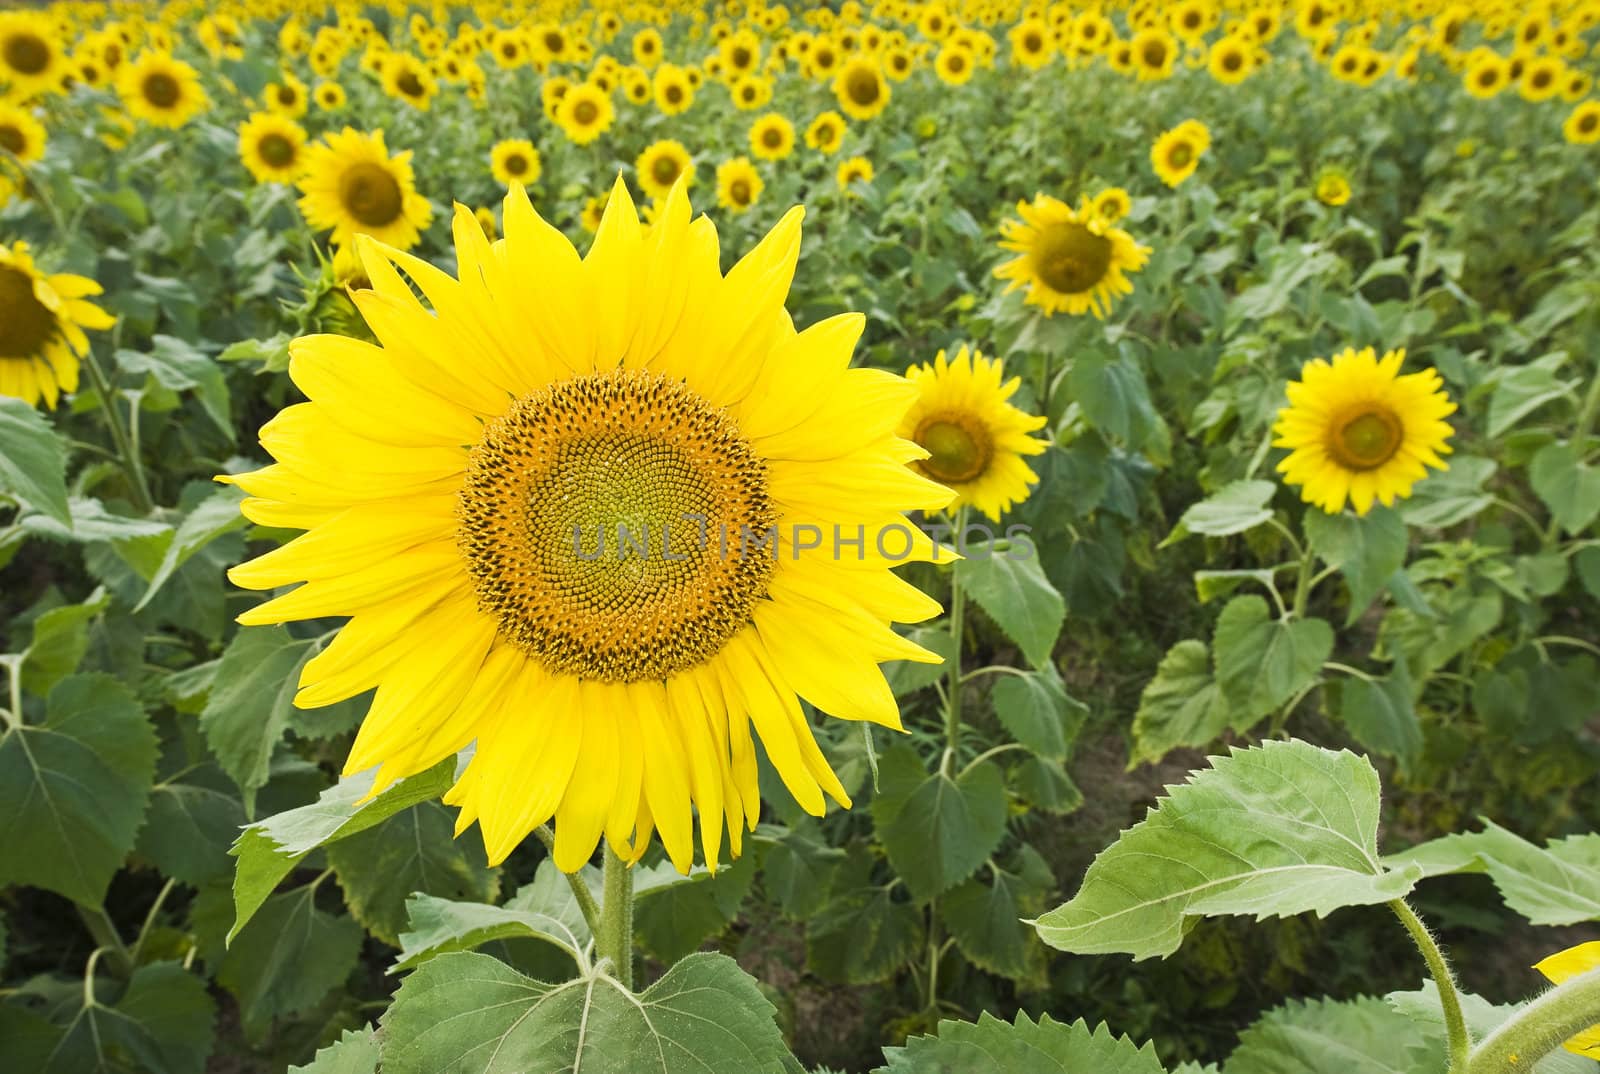 Field of Sun Flowers by thyrymn